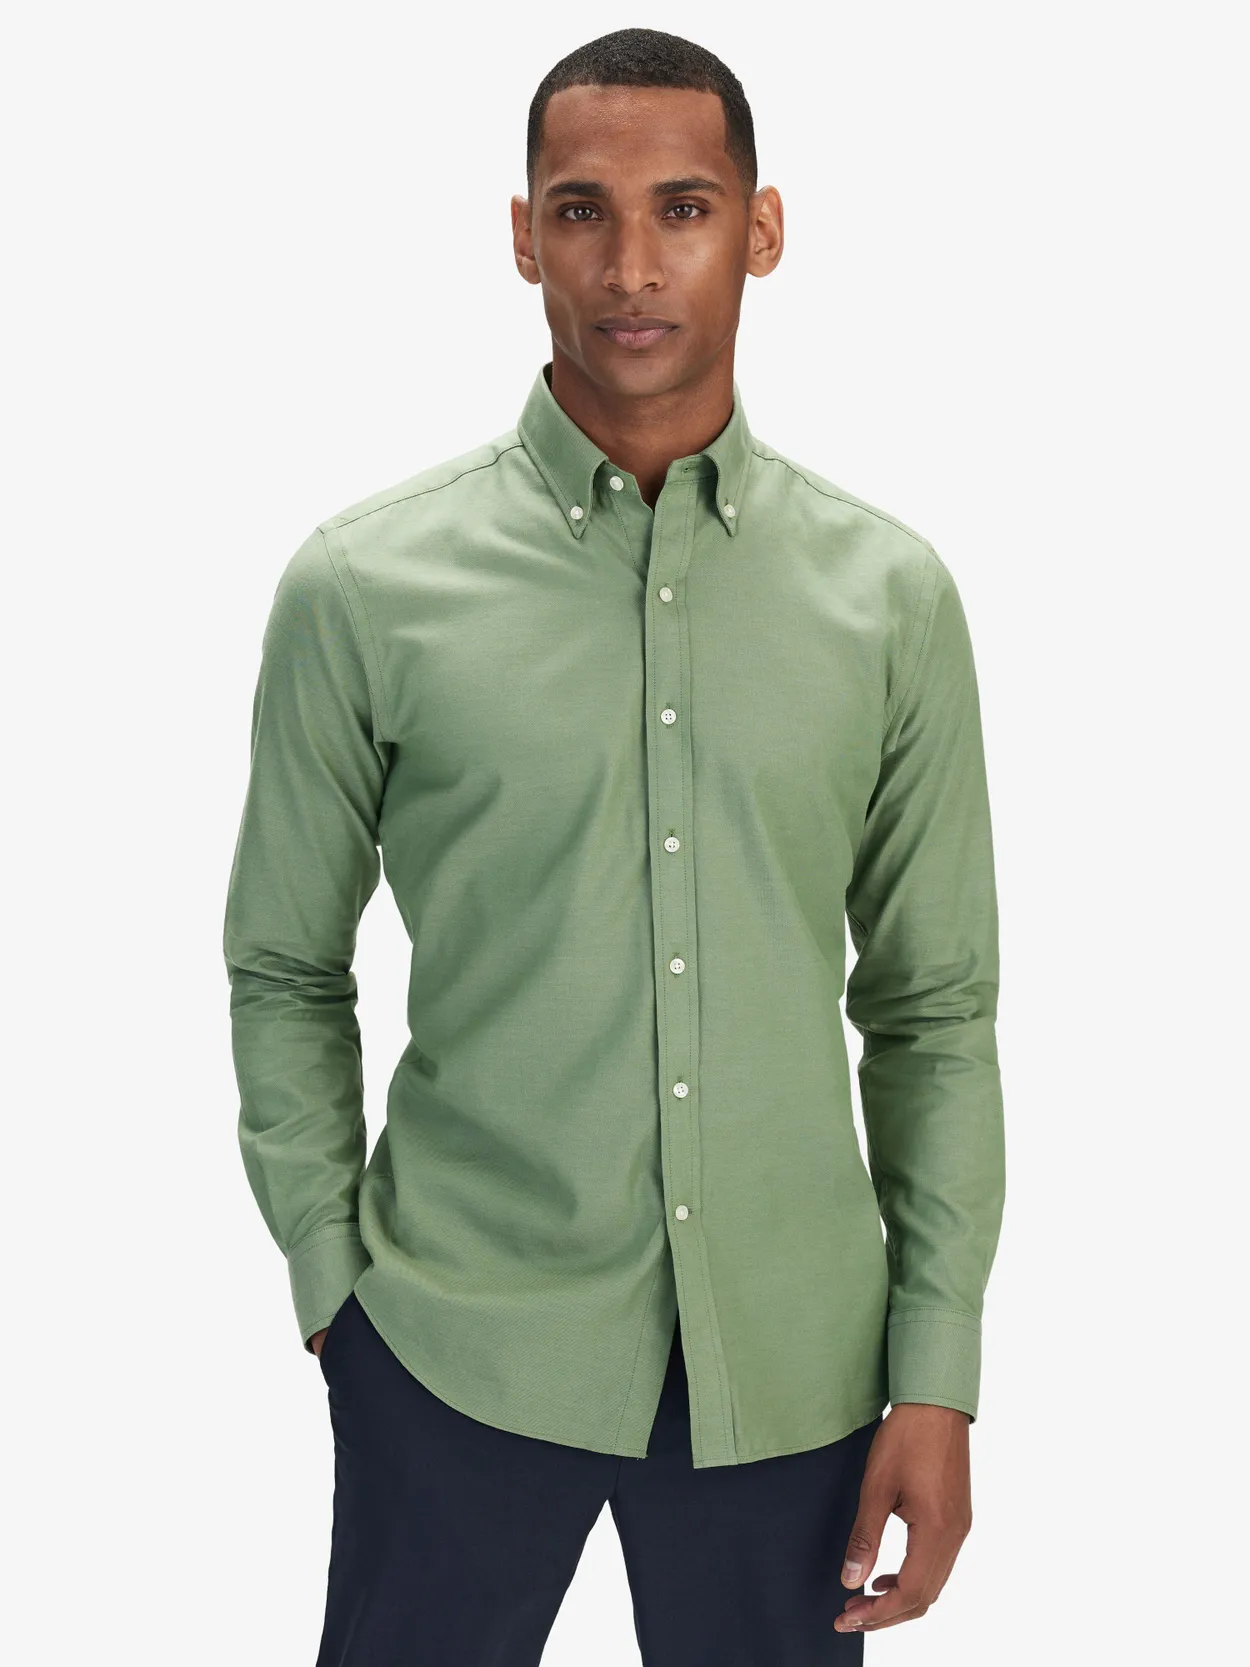 Green Flannel Shirt